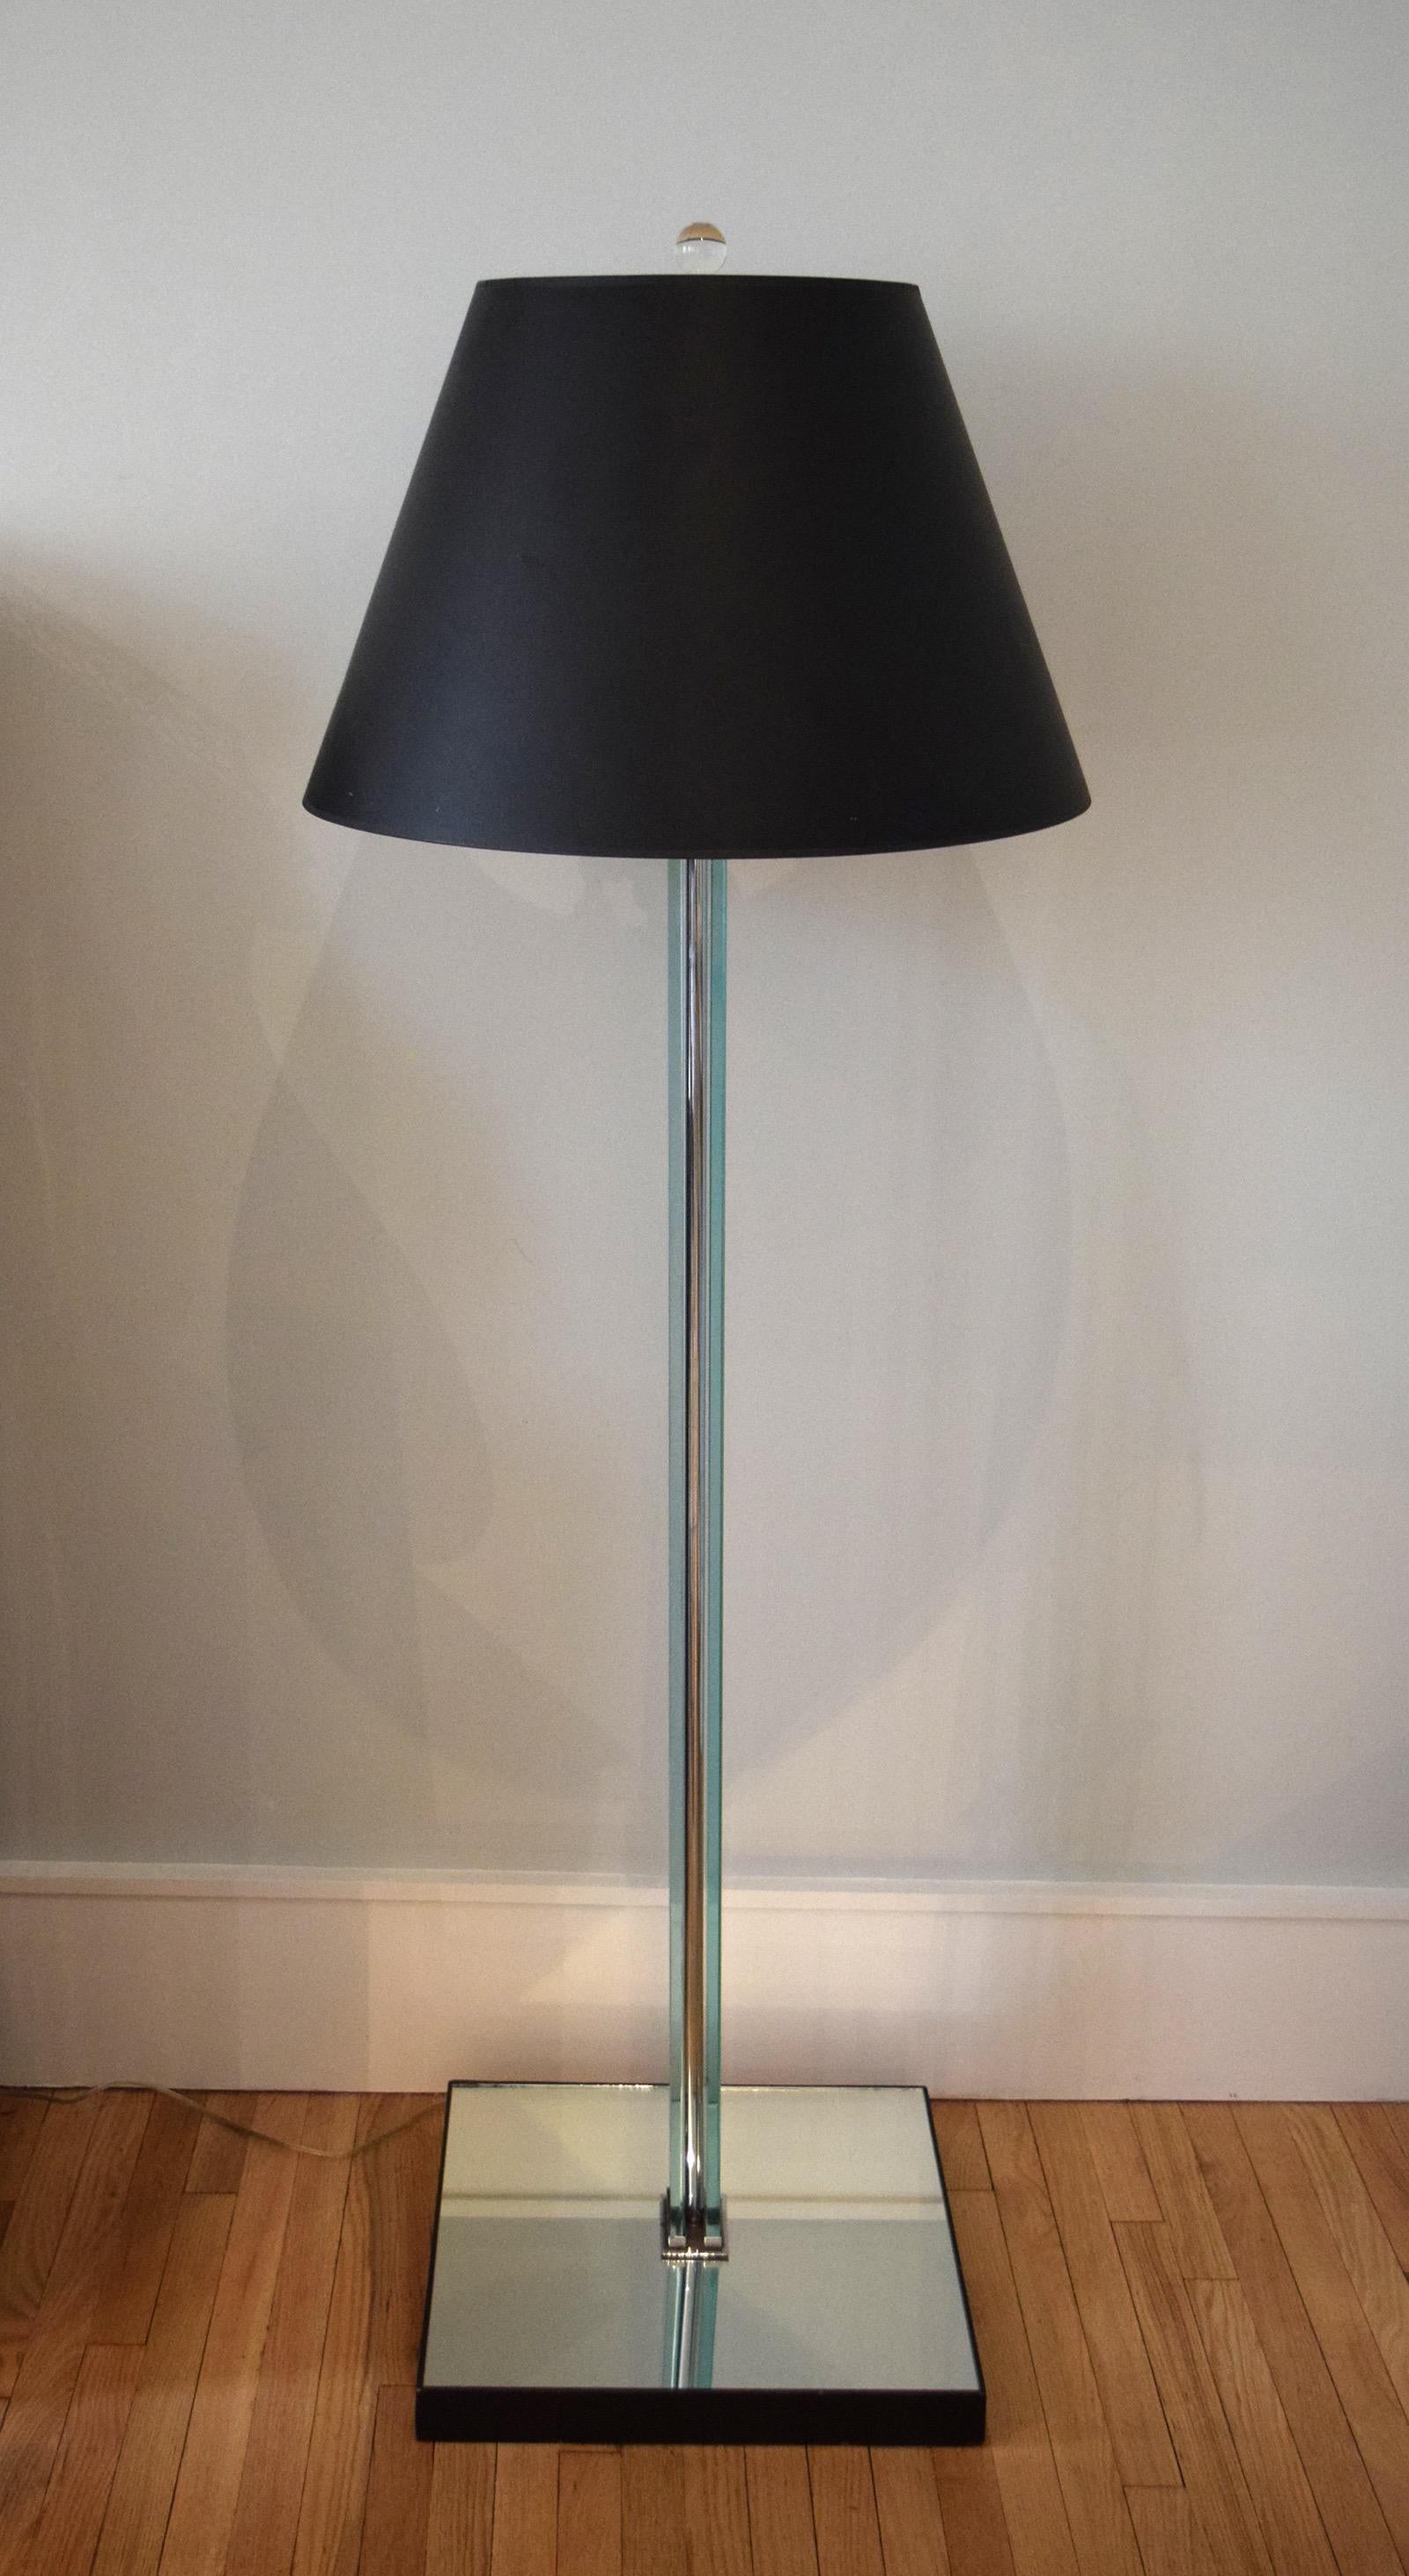 French Modernist 1930s Floor Lamp